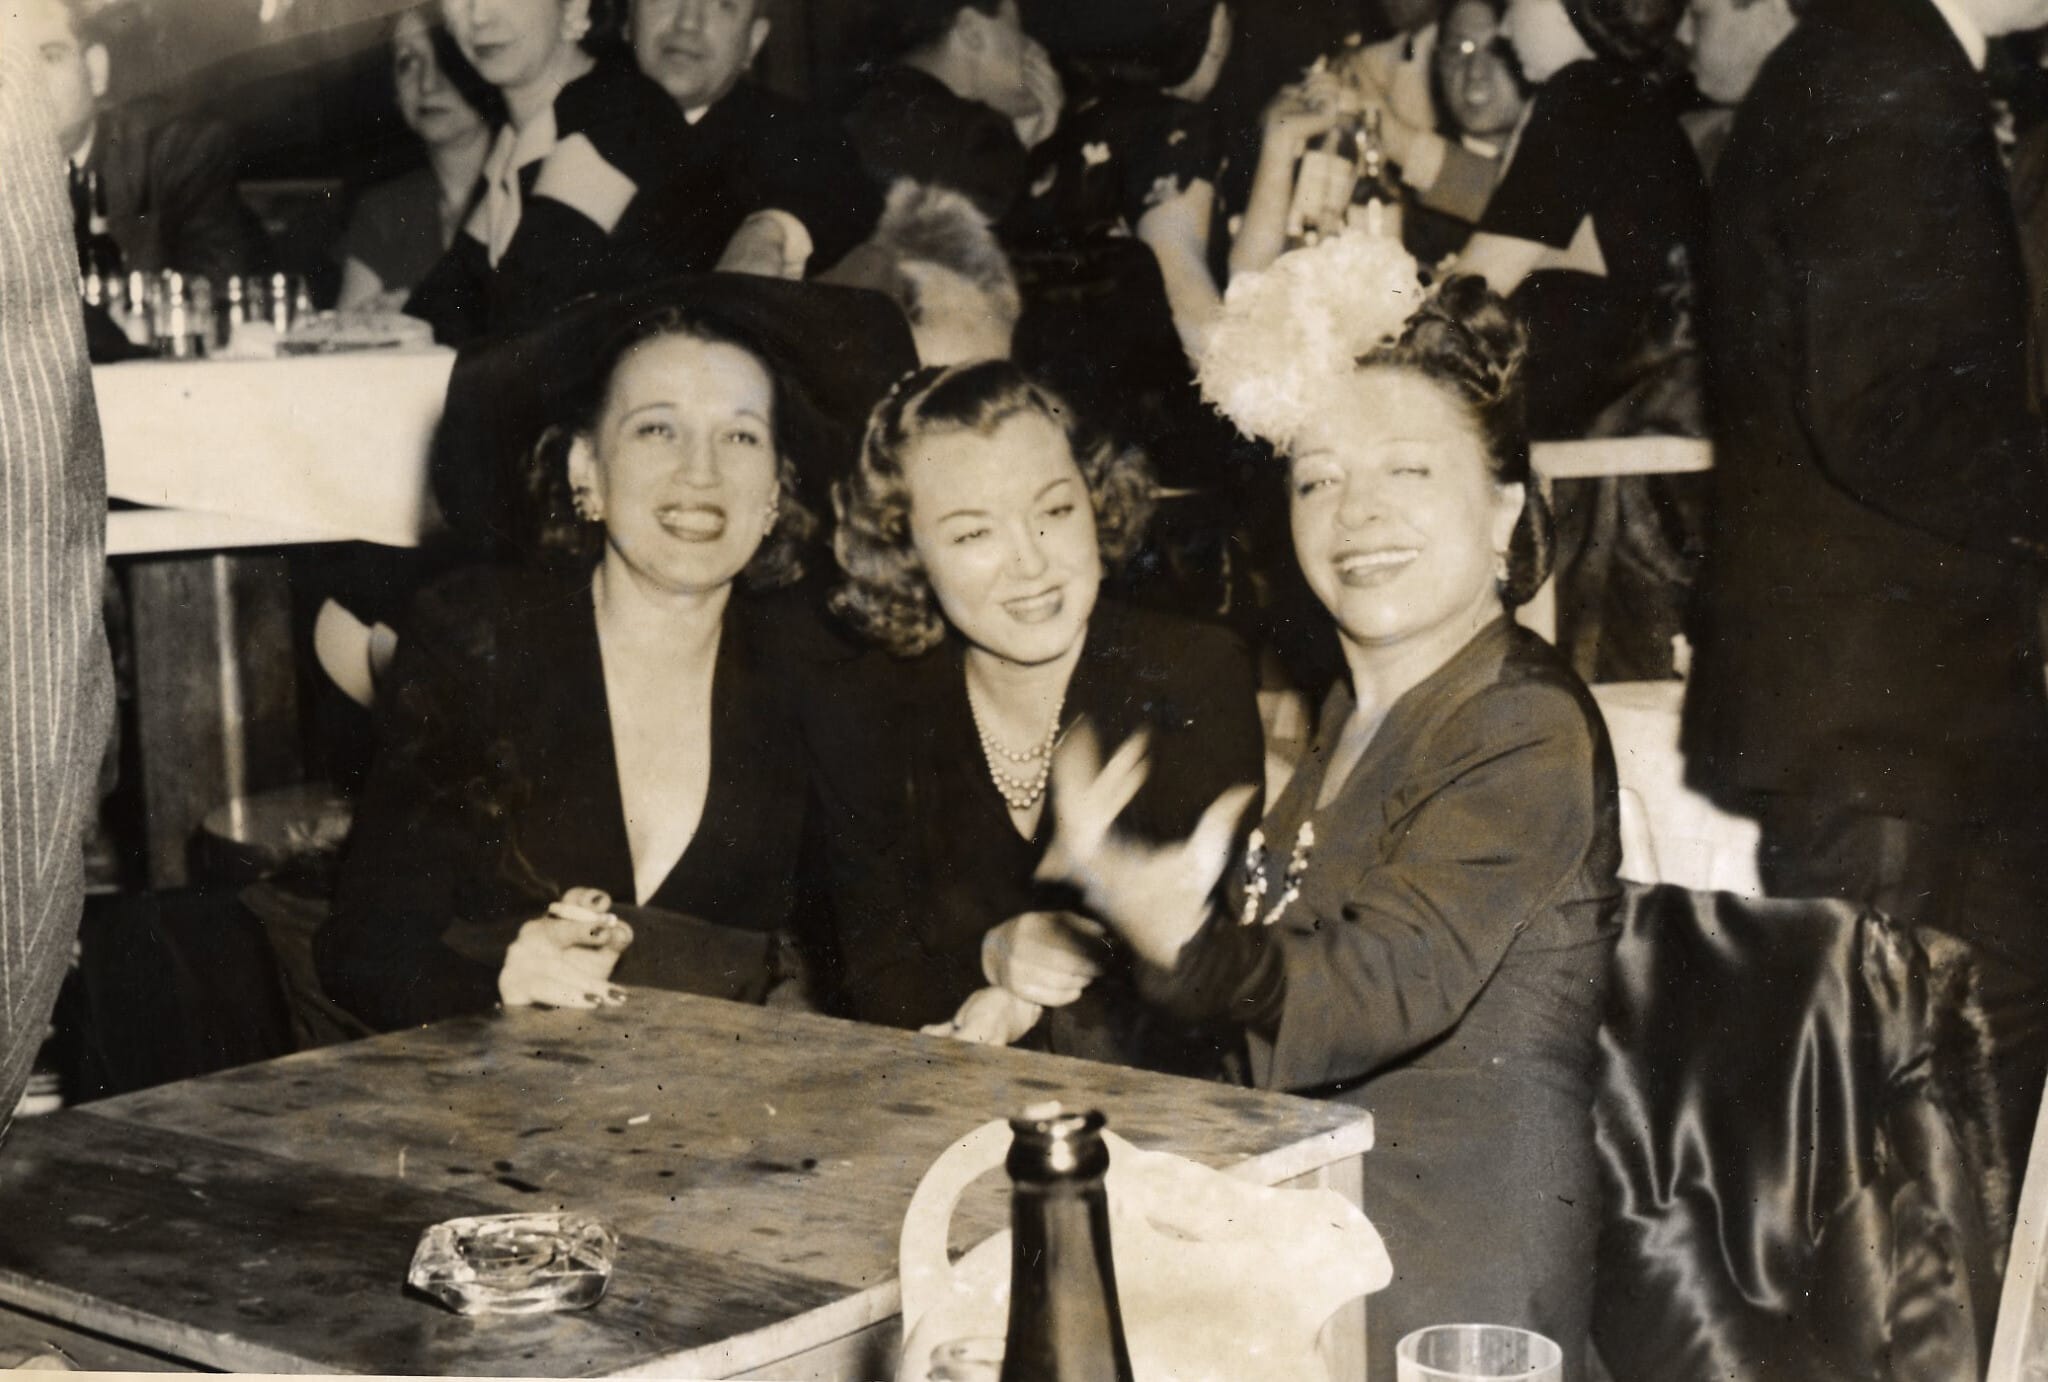 פולי אדלר חוגגת עם שתי עובדות שלה ב־1930 (צילום: Polly Adler Collection courtesy of Eleanor Vera)